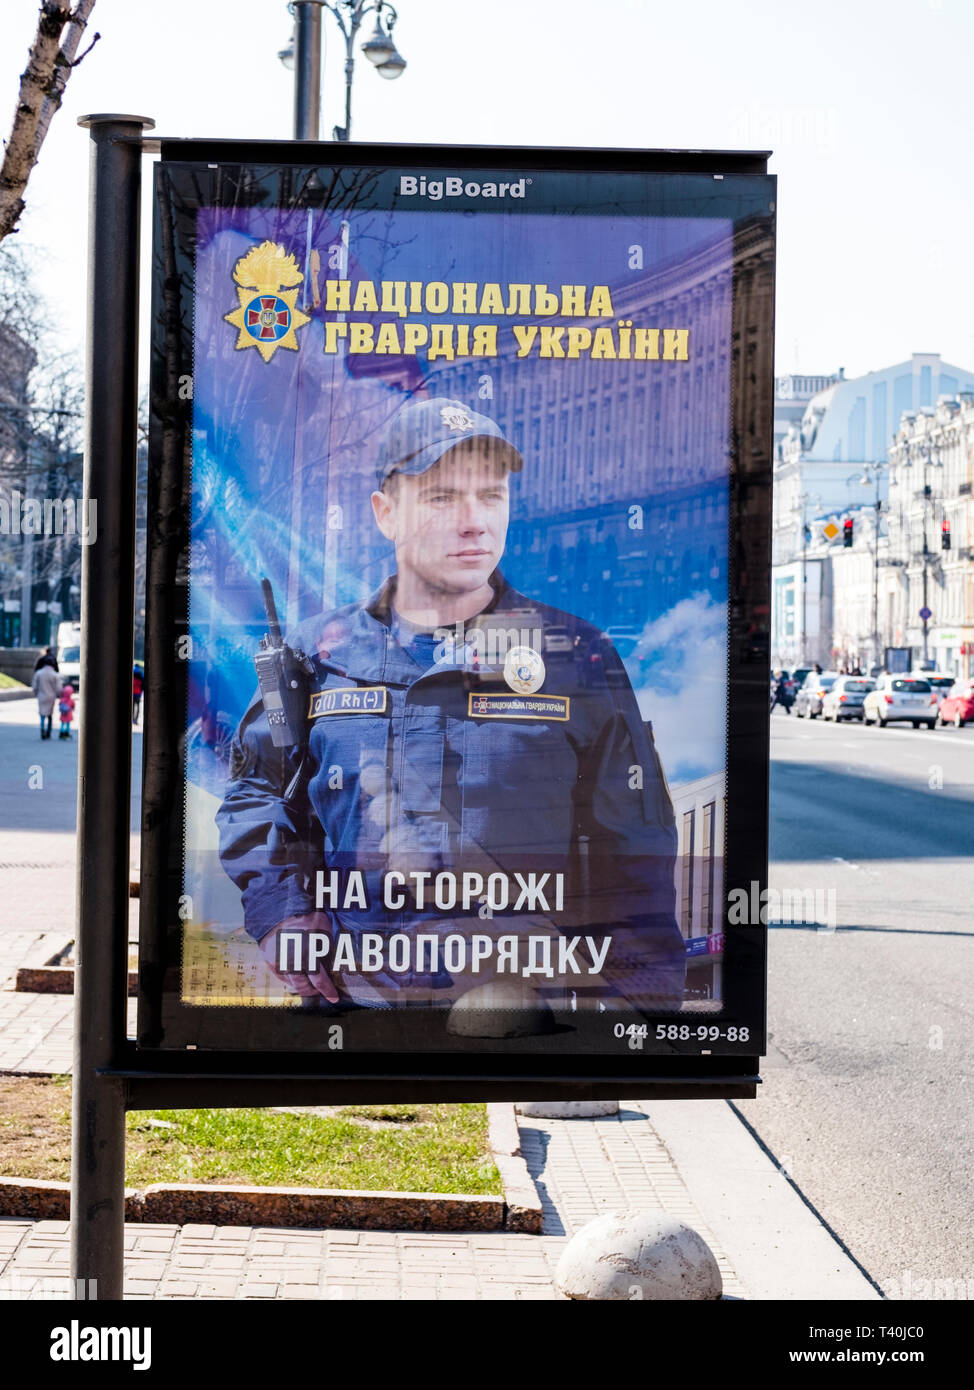 Werbung für Sicherheitskräfte in Kiew, Ukraine, 2019. Die Ukraine hat in einem bewaffneten Konflikt mit den Separatisten im Donbass Region für mehrere y. Stockfoto